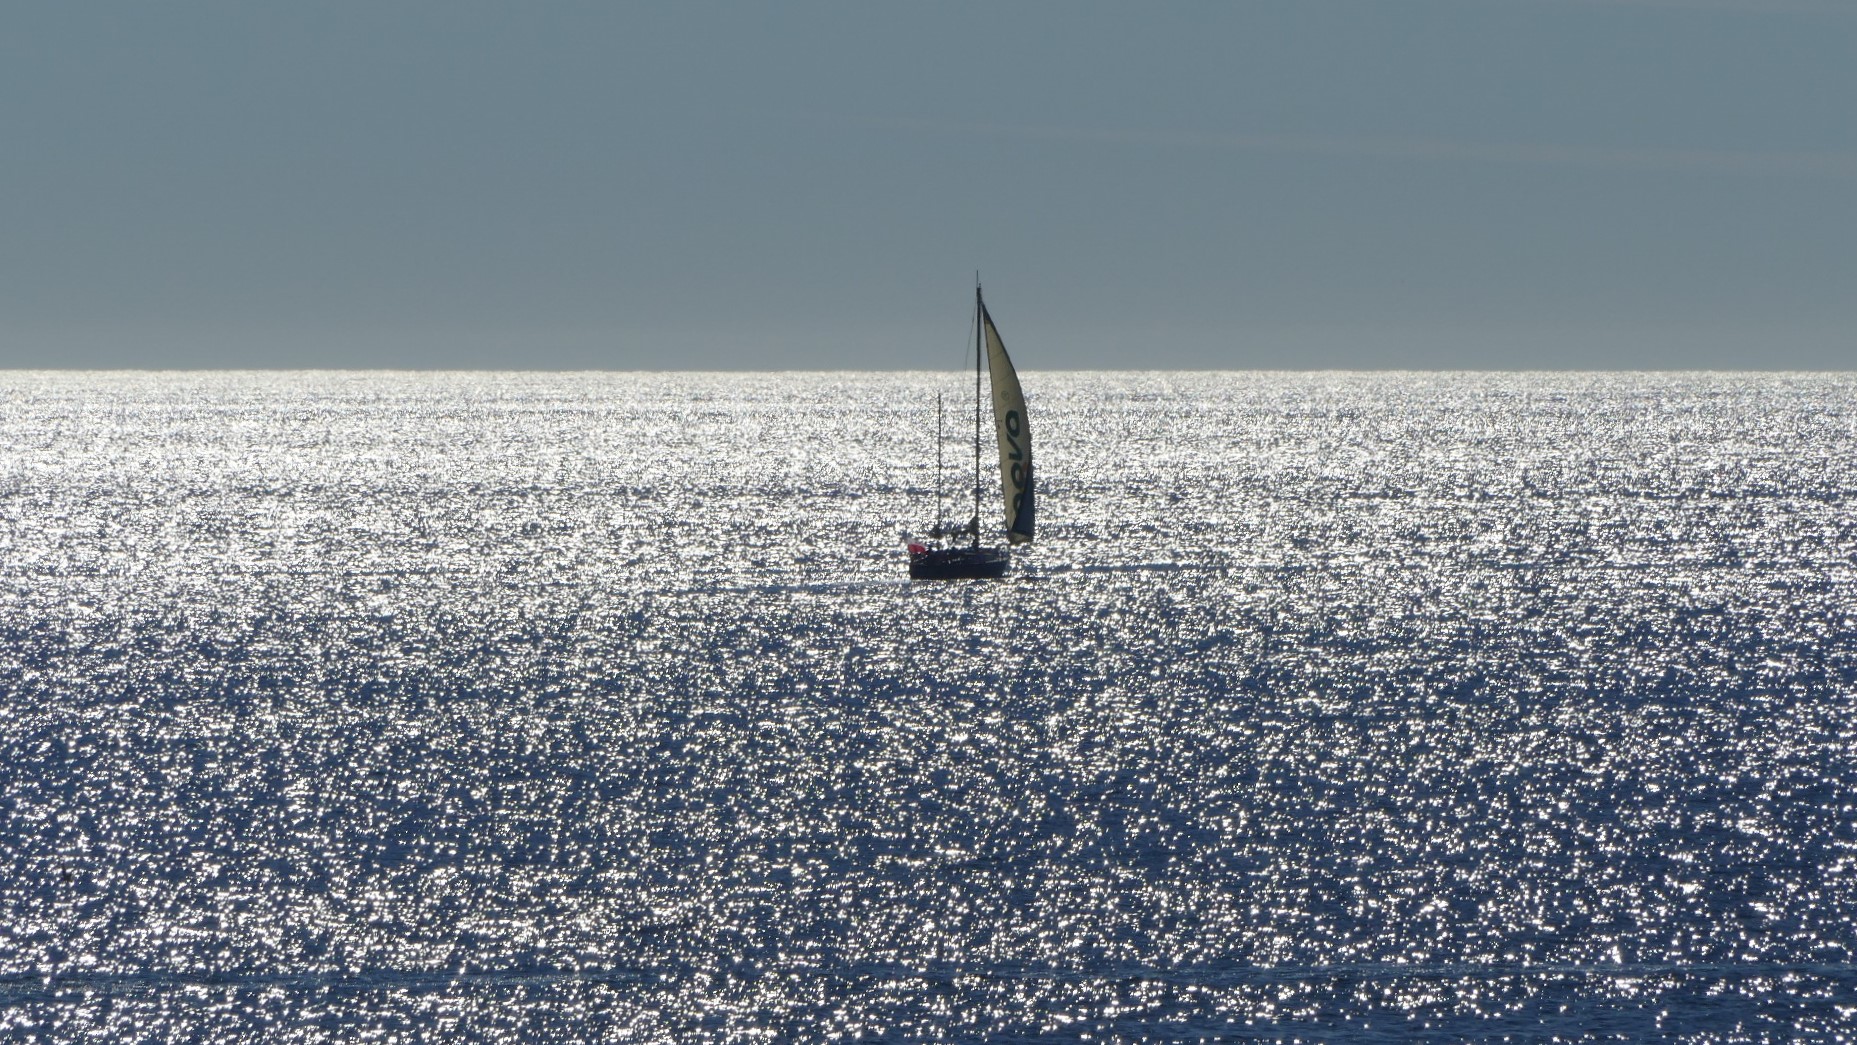 Sailing...